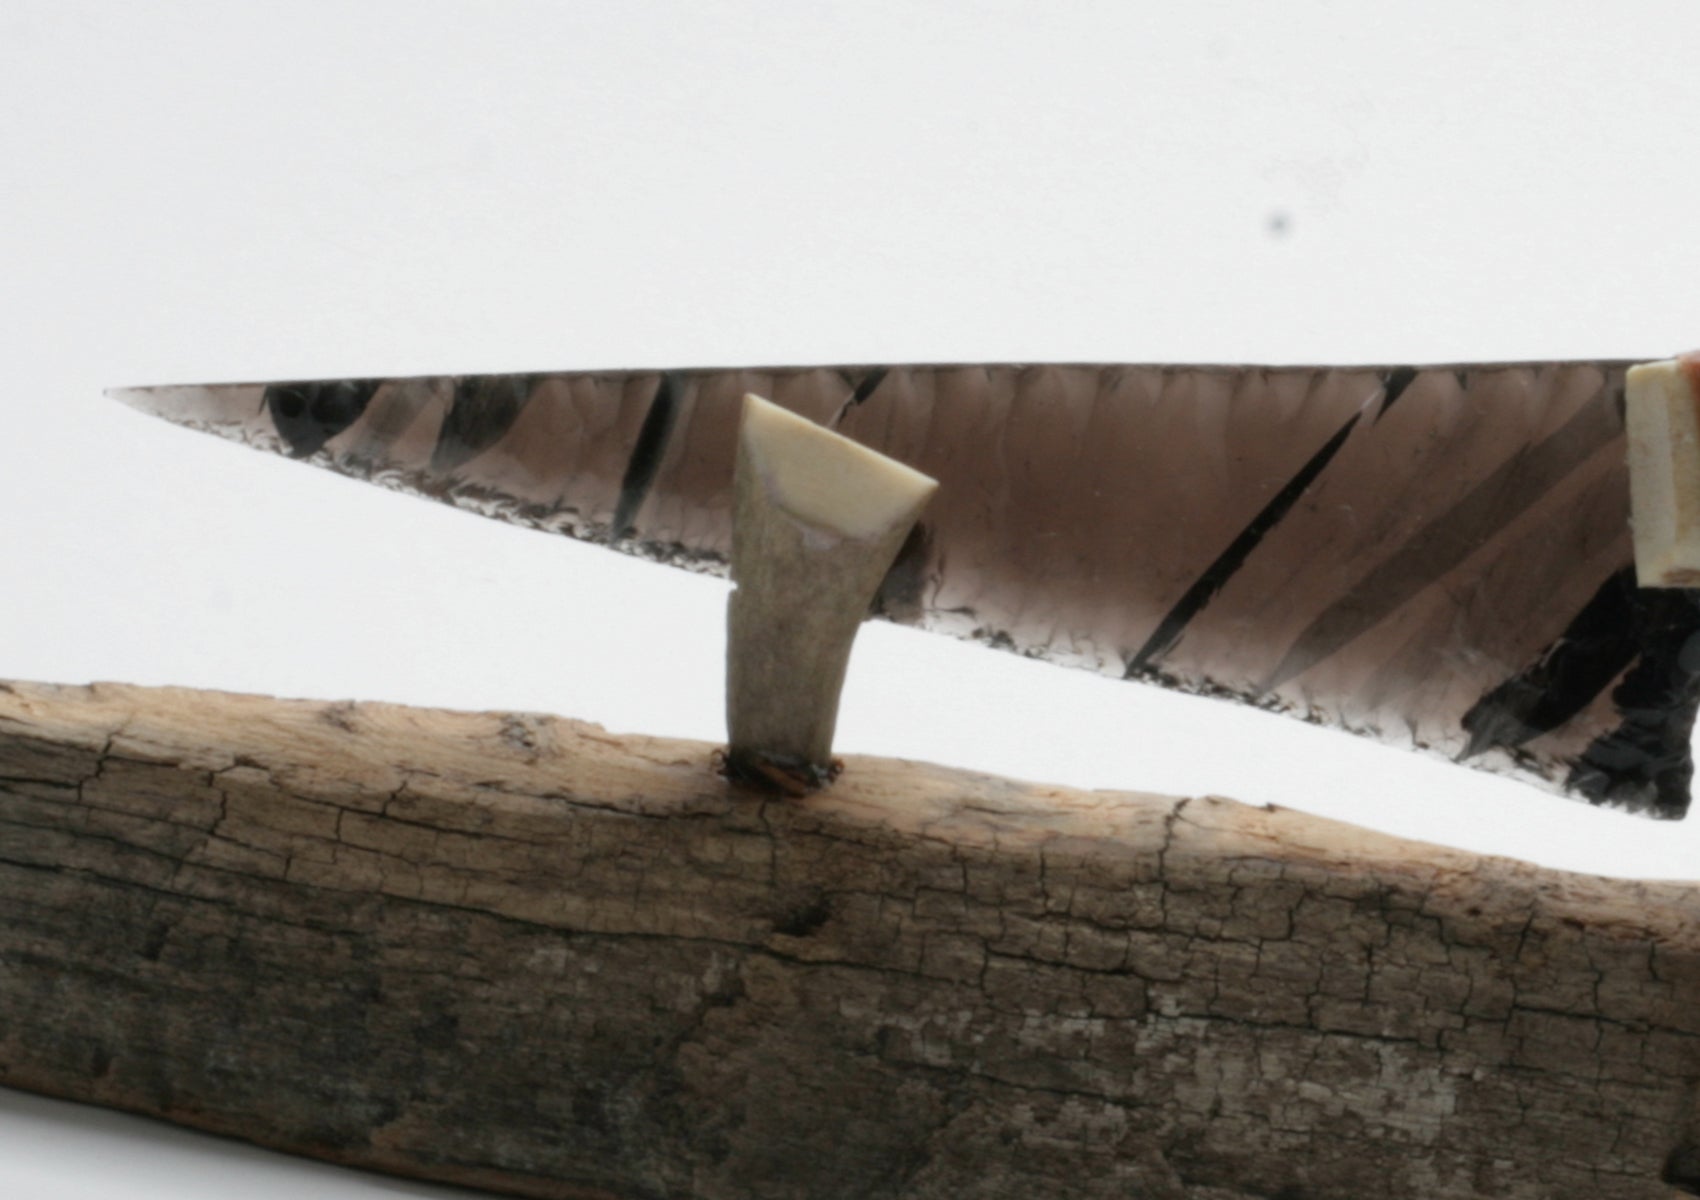 Transparent Obsidian Knife with Moose Antler Handle